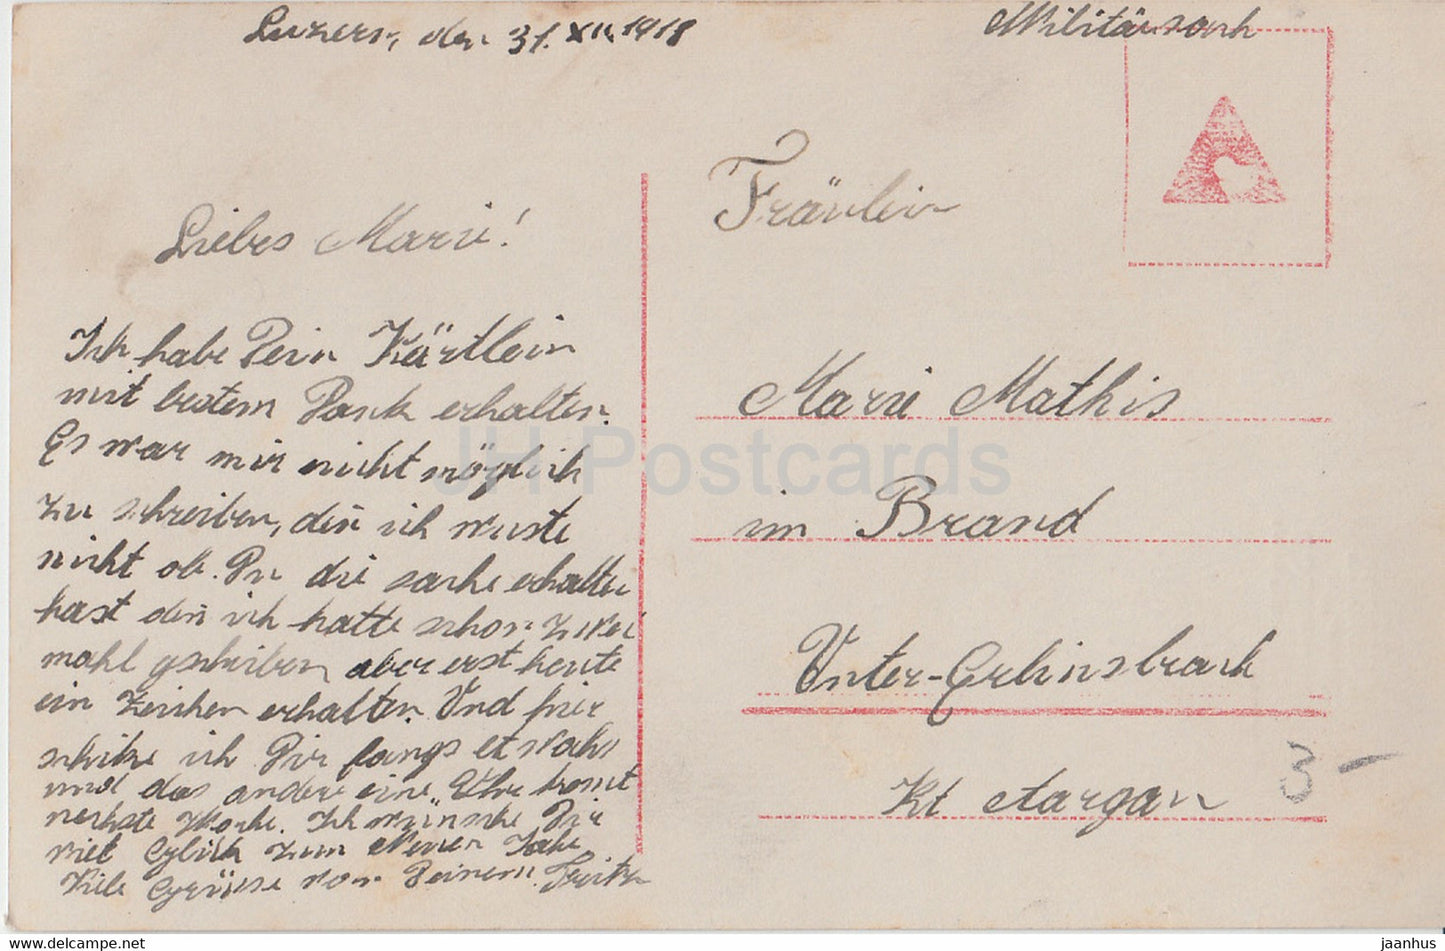 New Year Greeting Card - Die Besten Neujahrsgrusse - couple - Amag 61958/3 - old postcard - 1918 - Germany - used